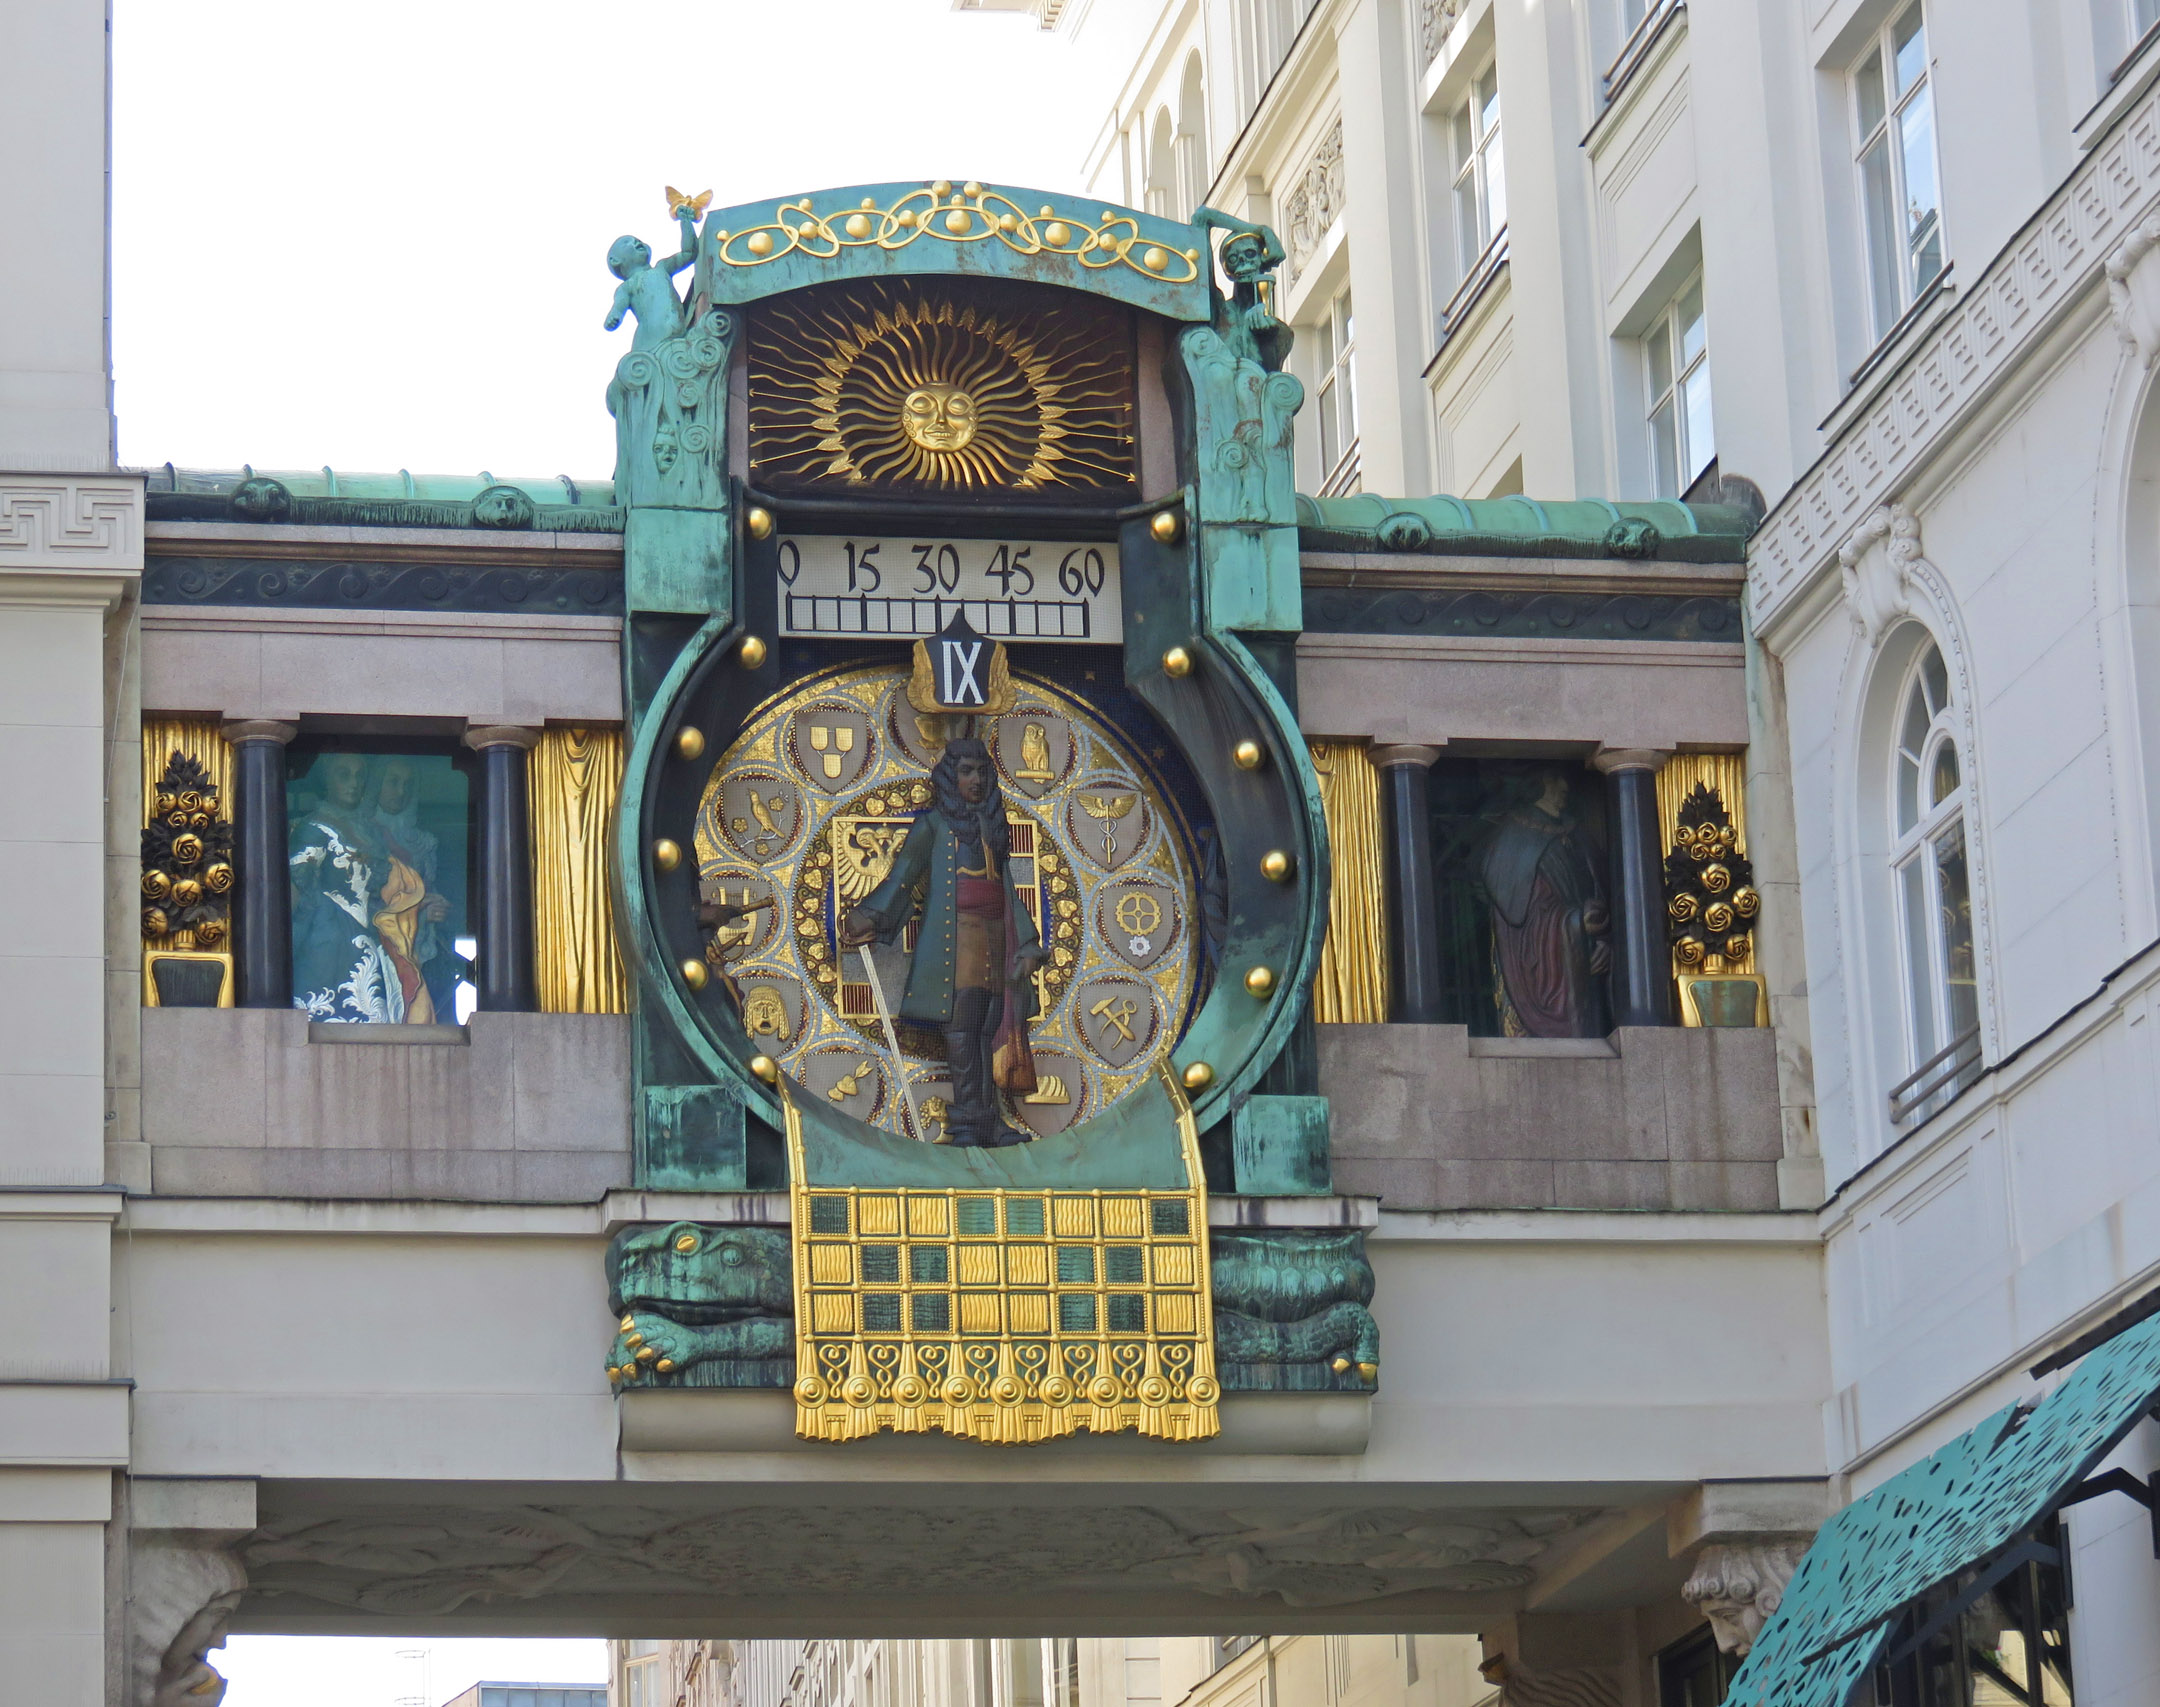 5. Ankeruhr clock in Vienna